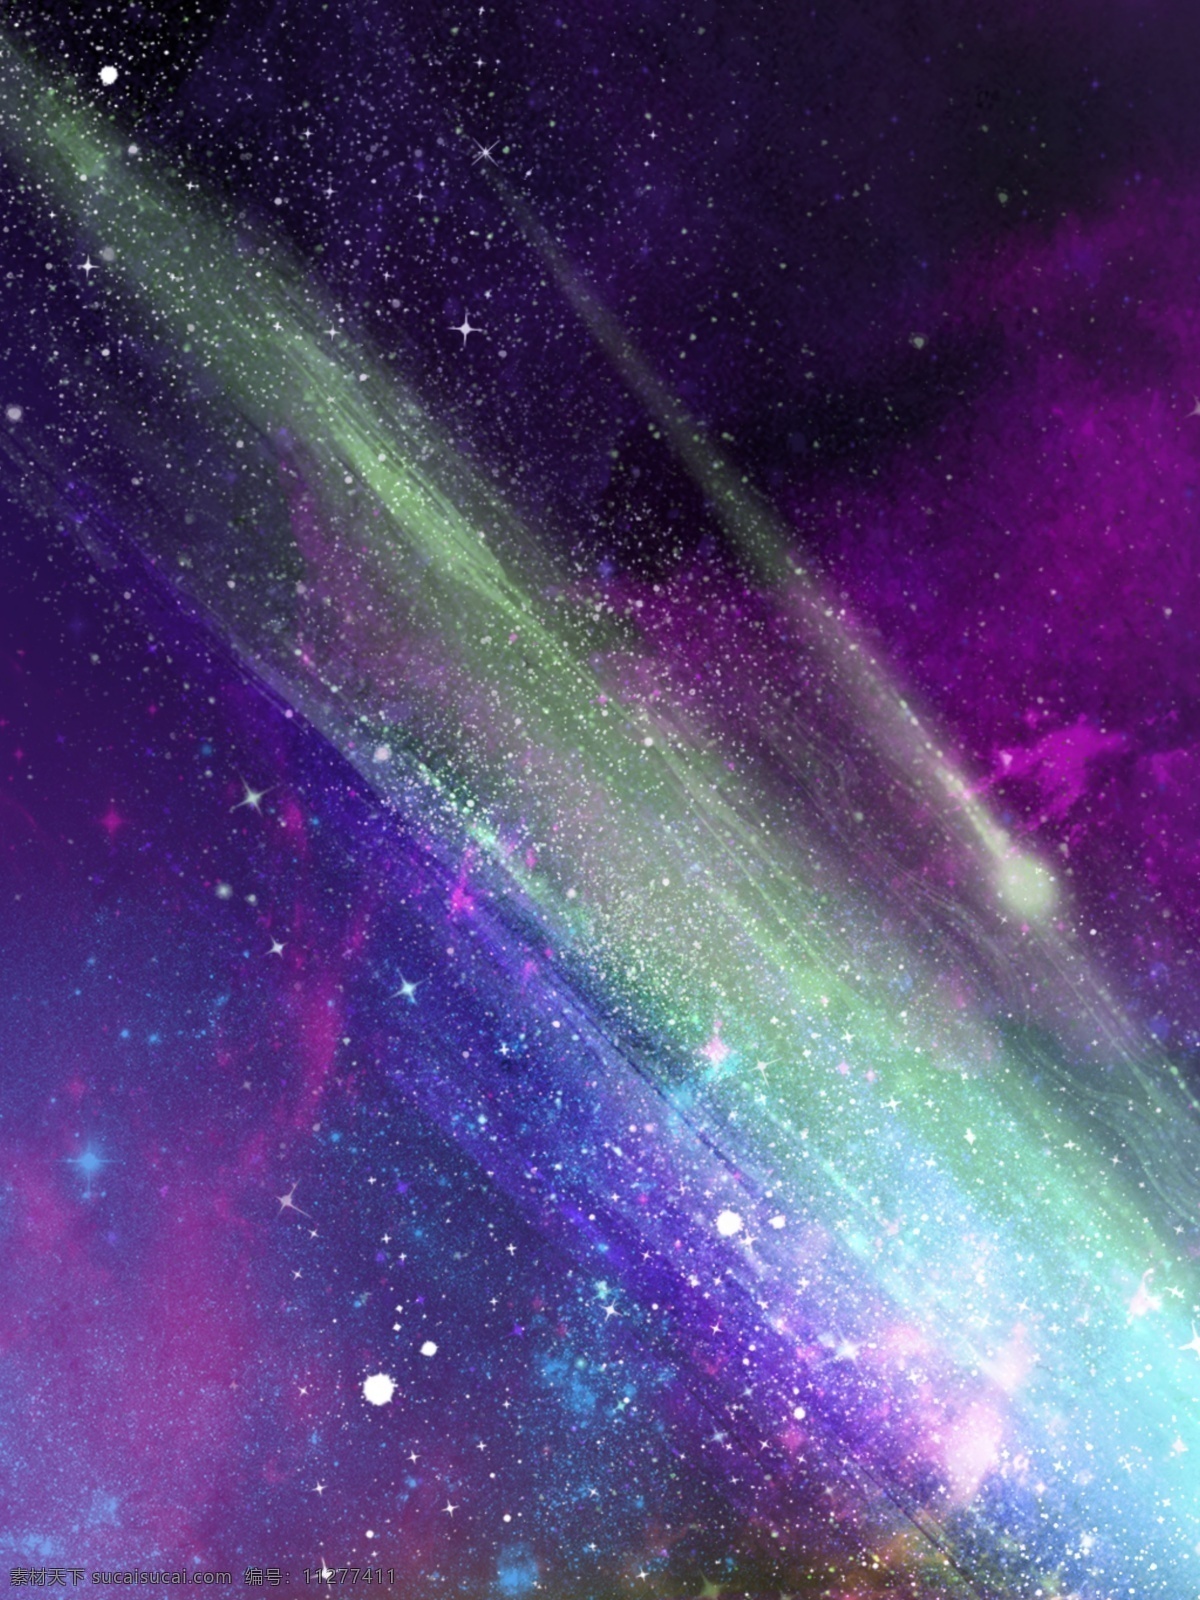 原创 浩瀚 星空 梦幻 极光 背景 图 梦幻星空 宇宙星空 宇宙幻想 背景素材 蓝紫色